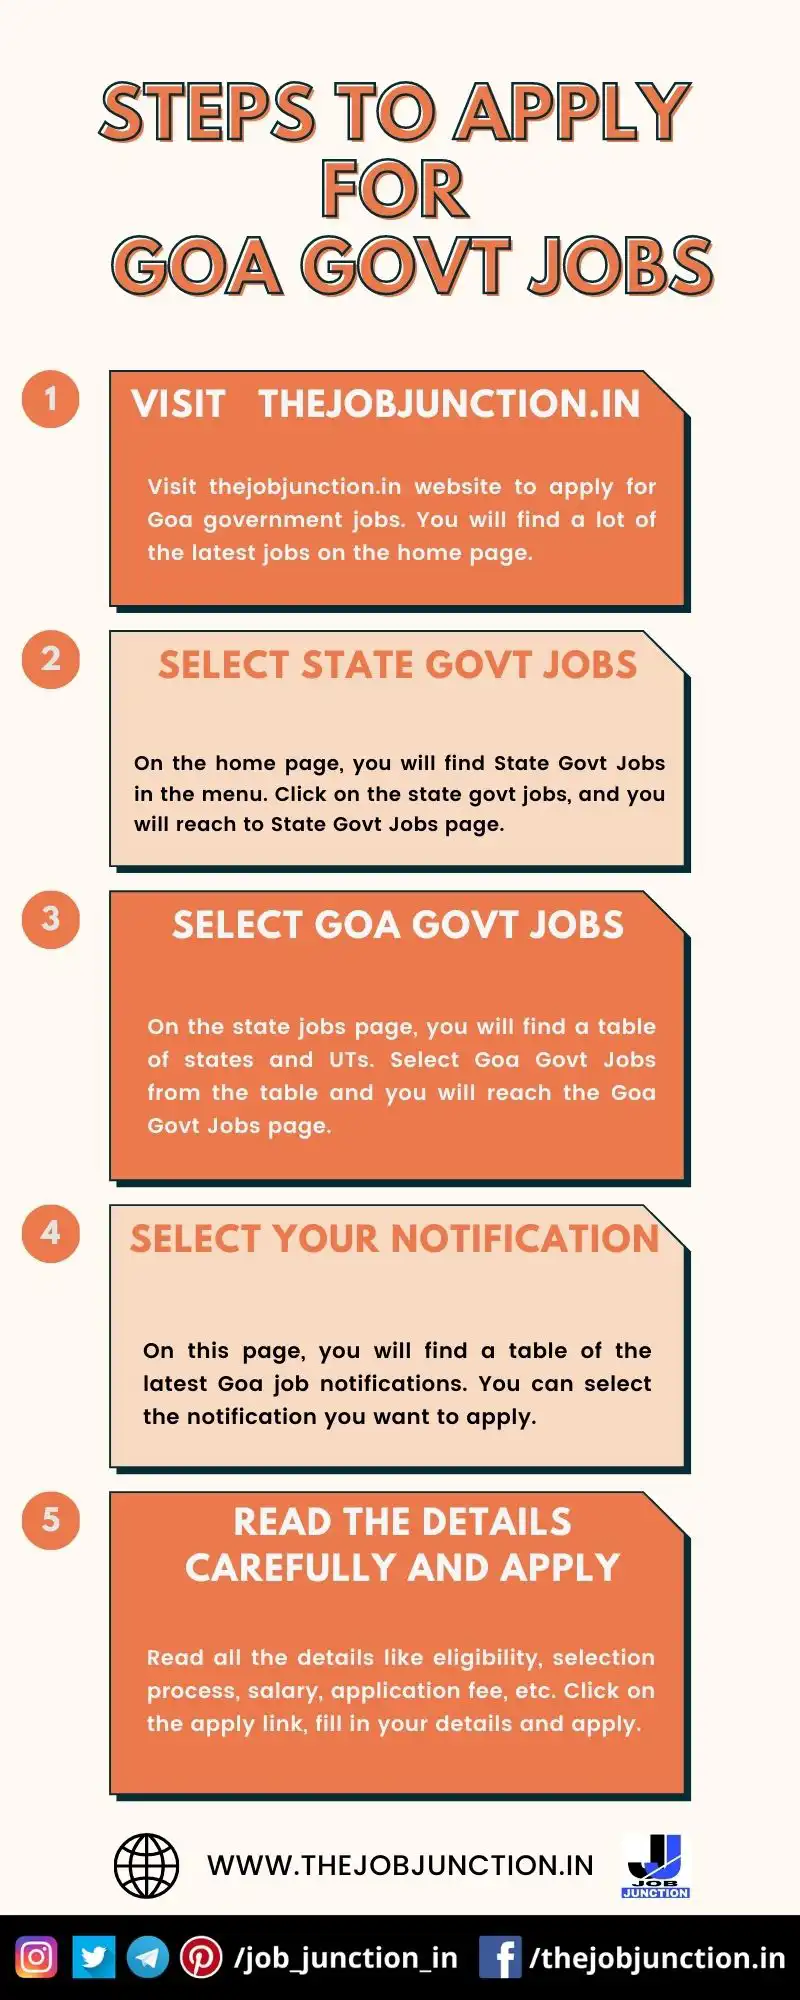 STEPS TO APPLY FOR GOA GOVT JOBS